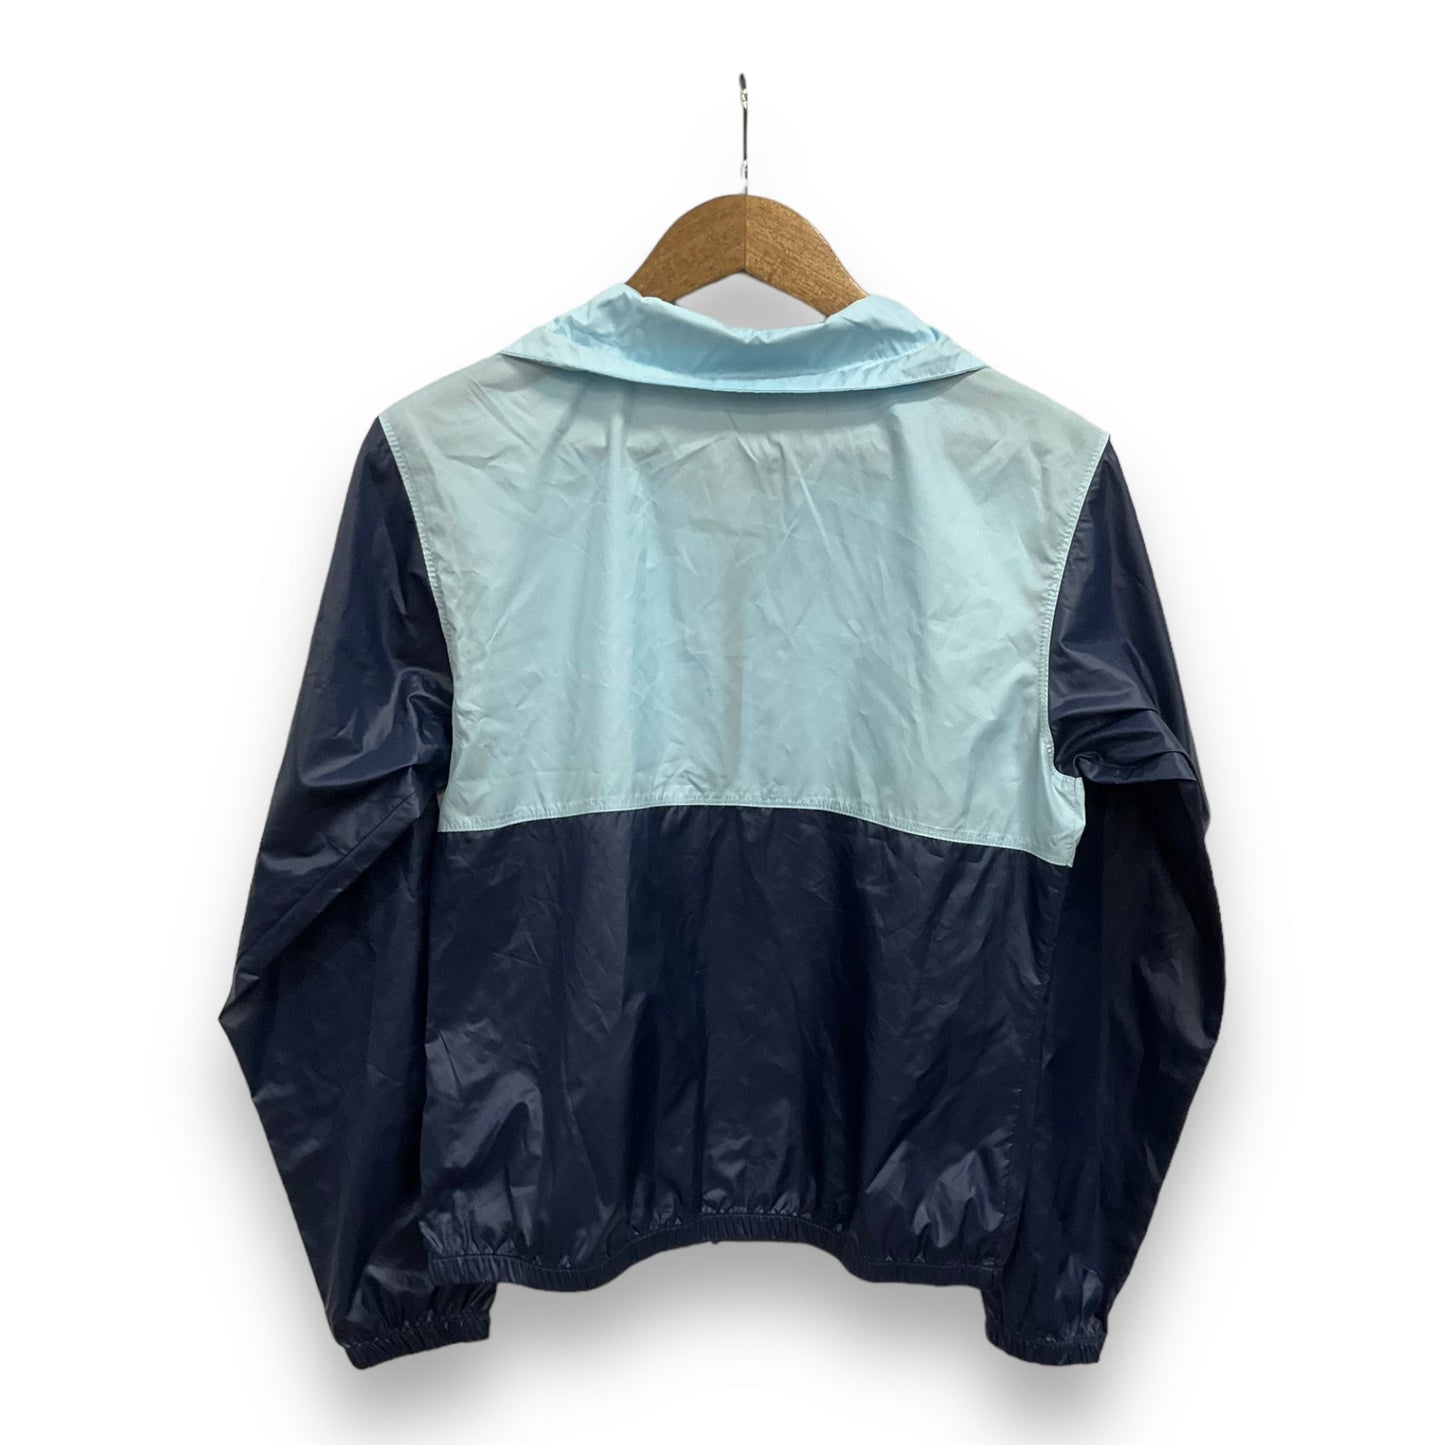 Jacket Windbreaker By Columbia  Size: Xs